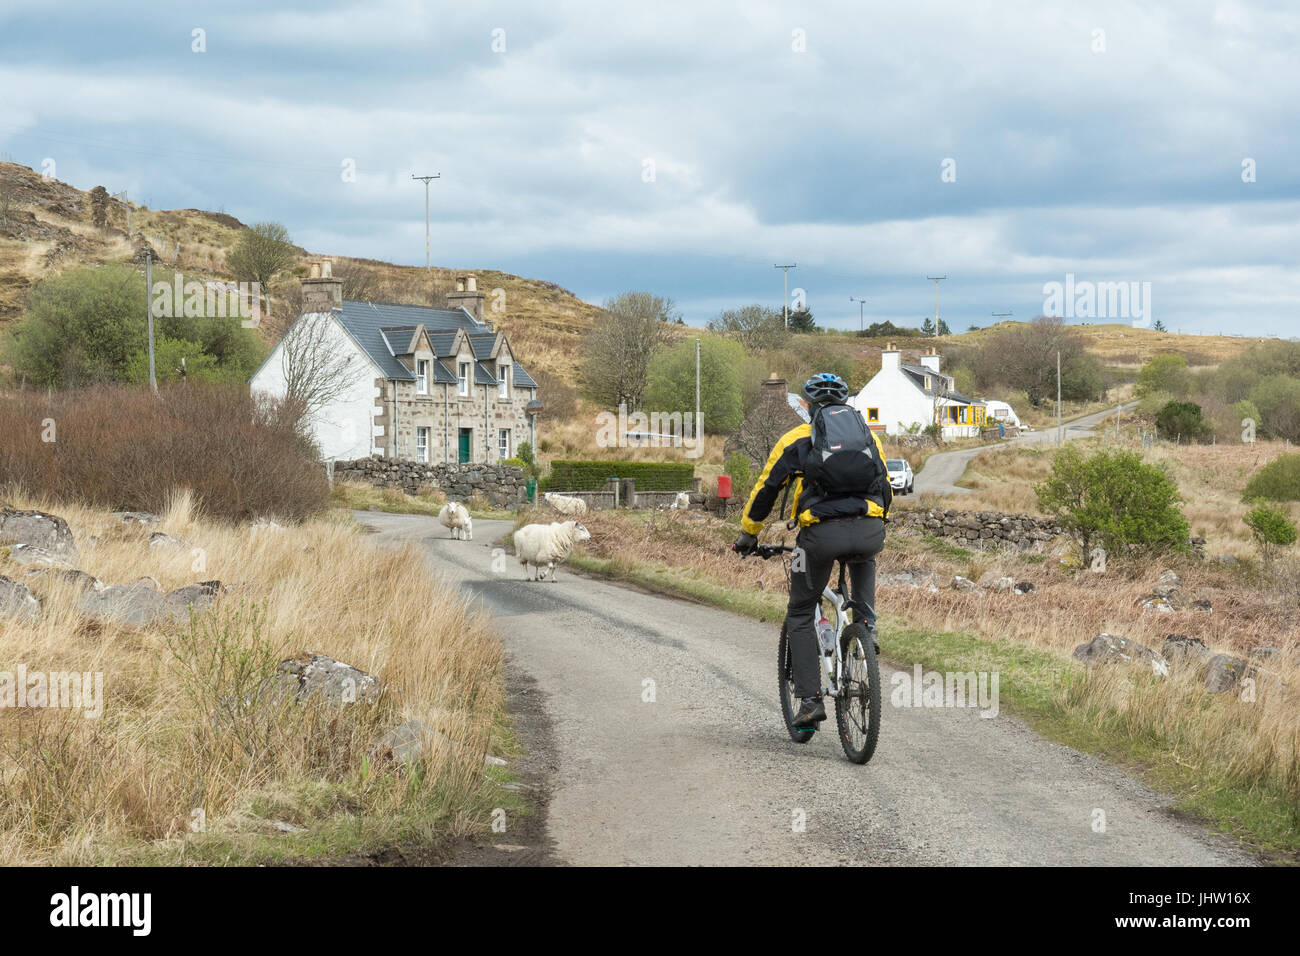 Randonnée à vélo en Ecosse - moutons près de cycliste sur route à voie unique sur la péninsule de Saint, les Highlands écossais, UK Banque D'Images